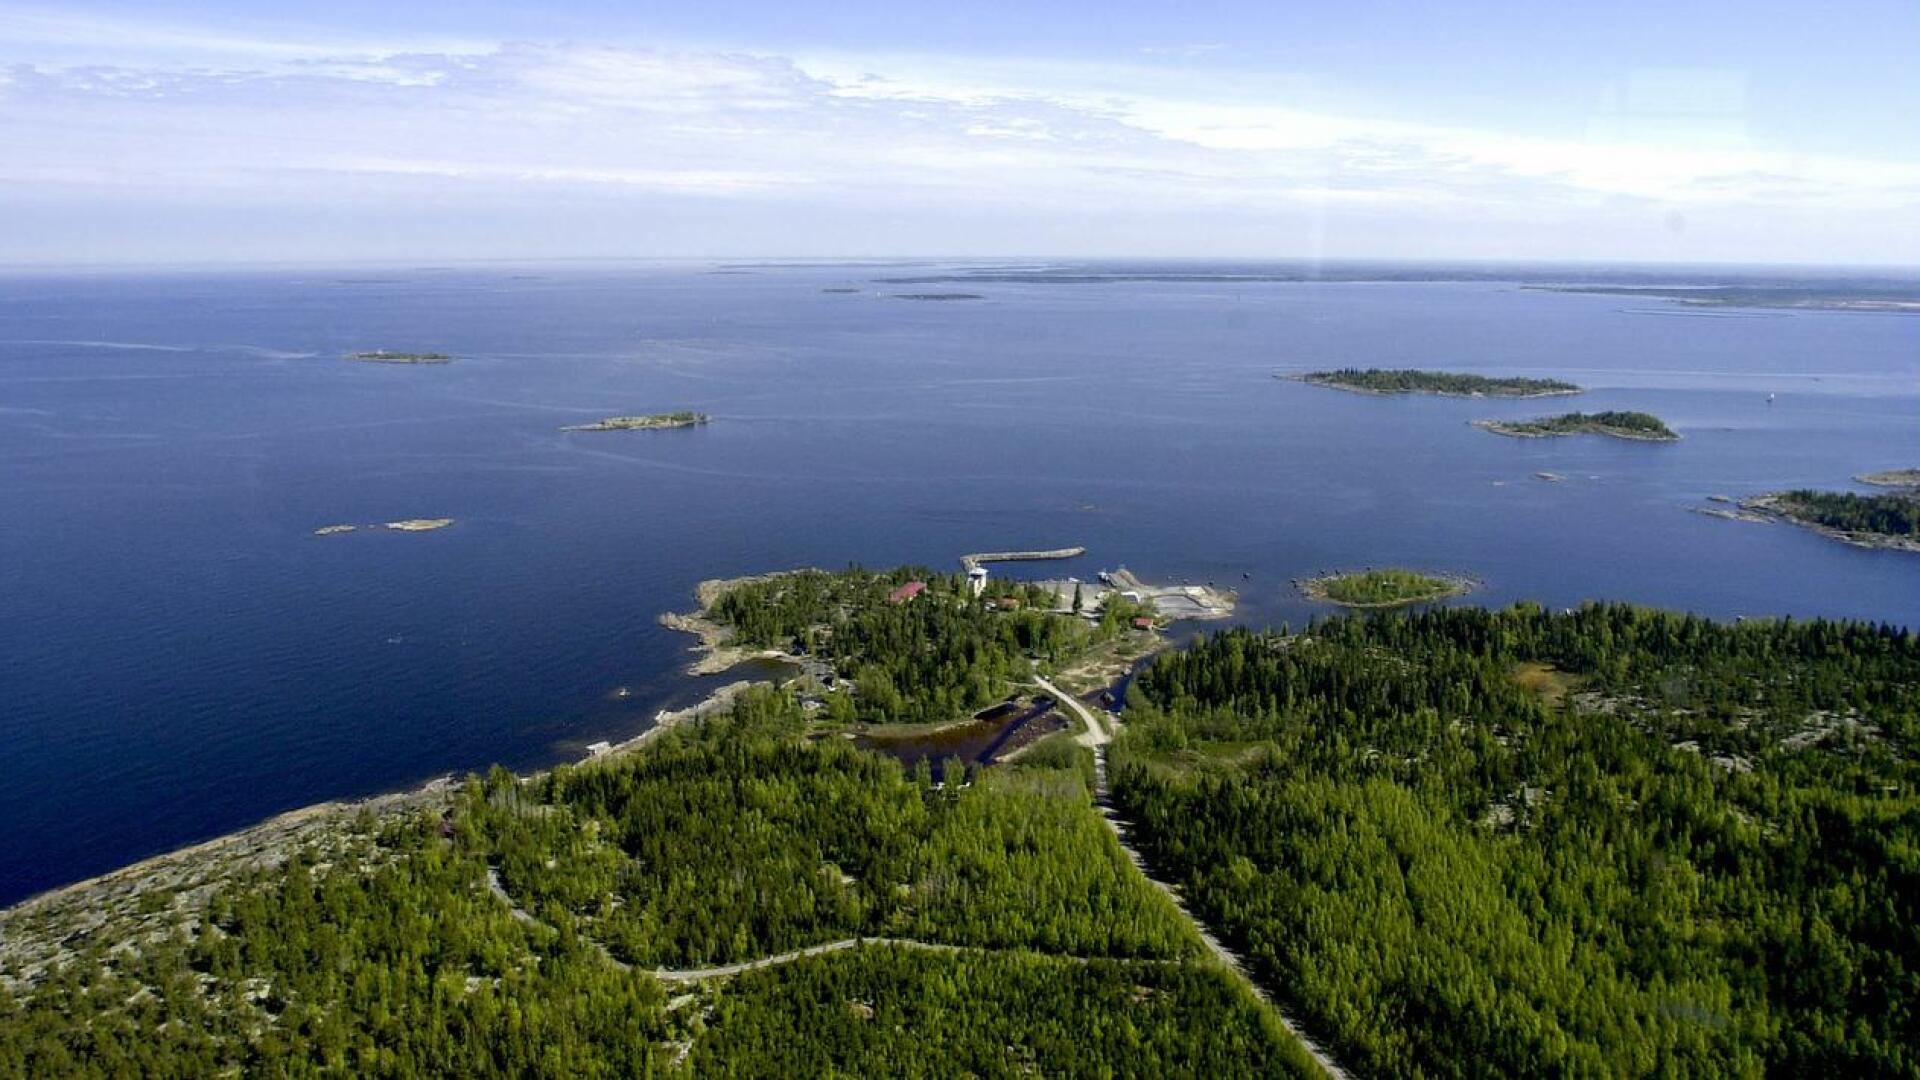 (arkistokuva) Meren kainalossa, Öjassa sijaitsee entiset merivartioaseman tilat. 